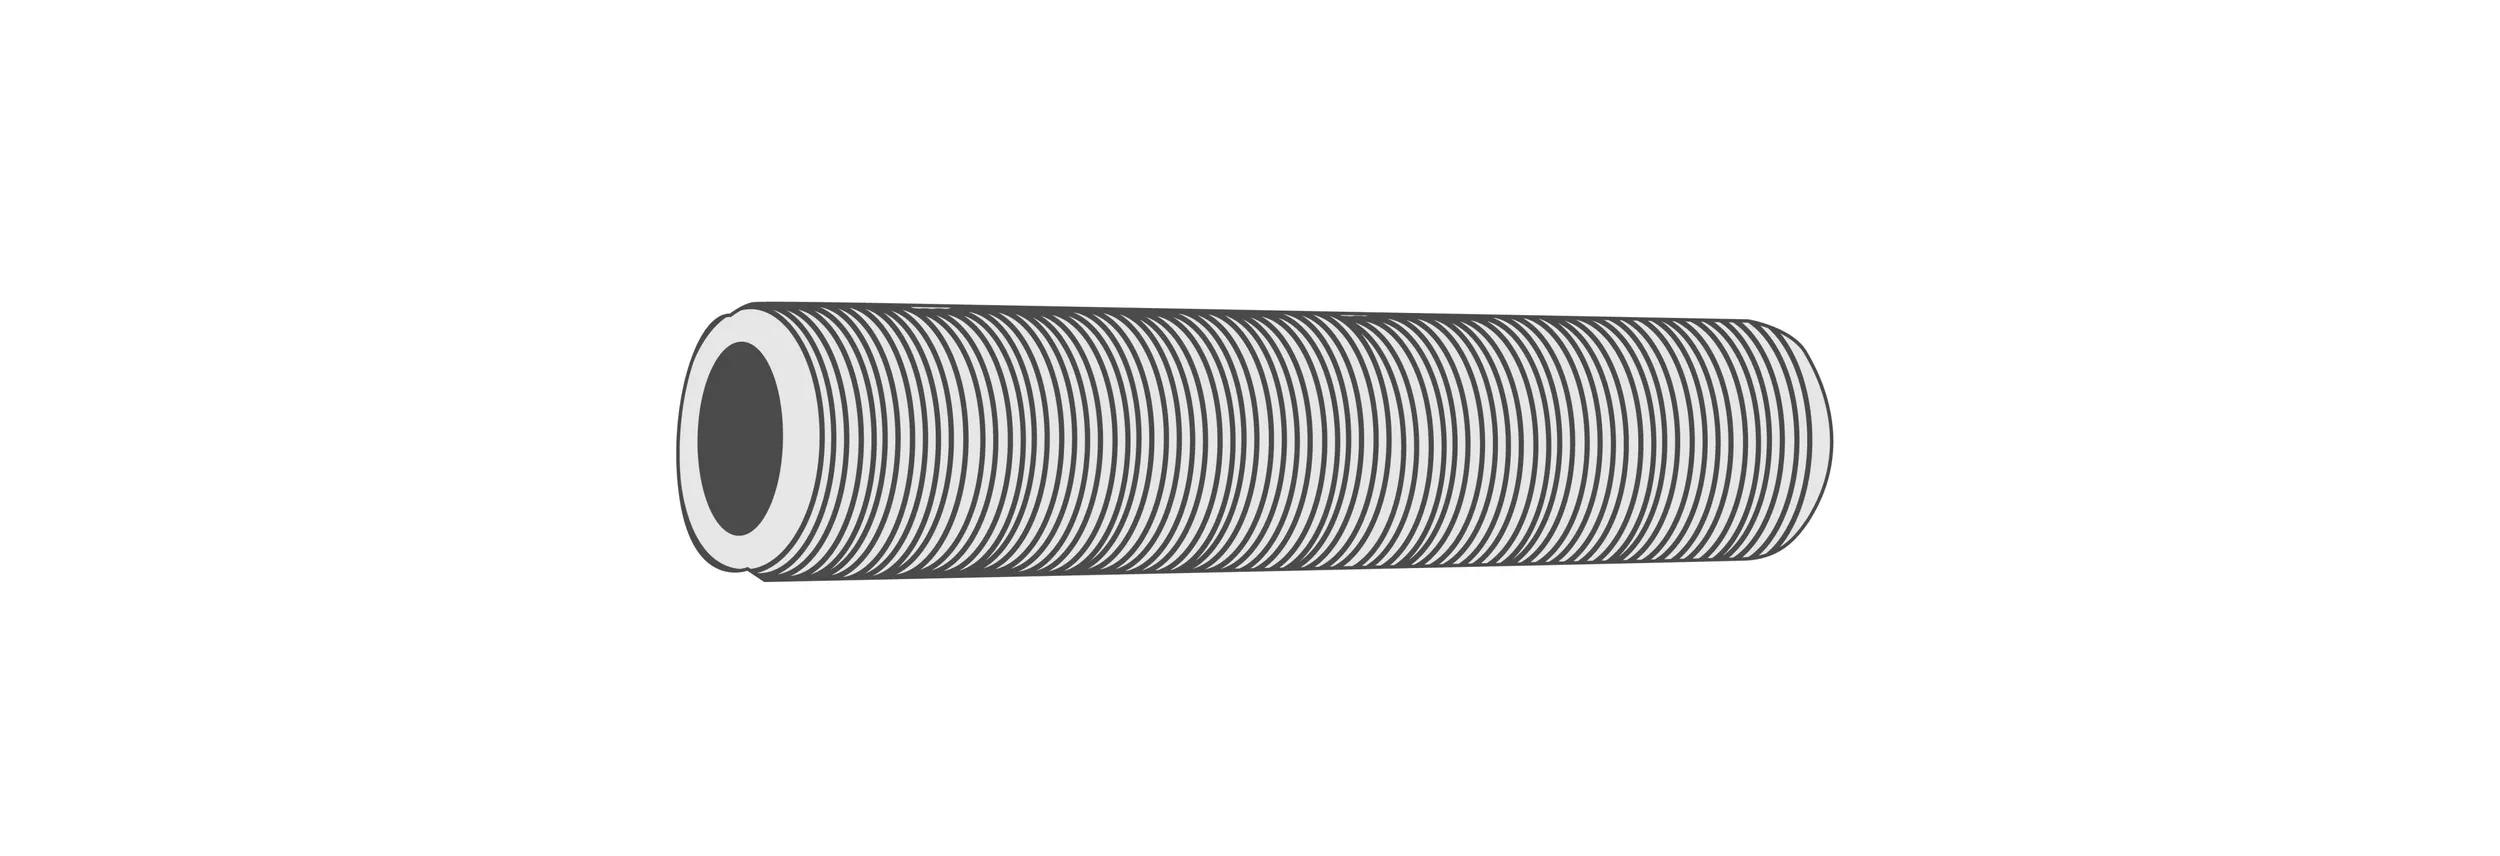 ​Hollow-inside threaded rod